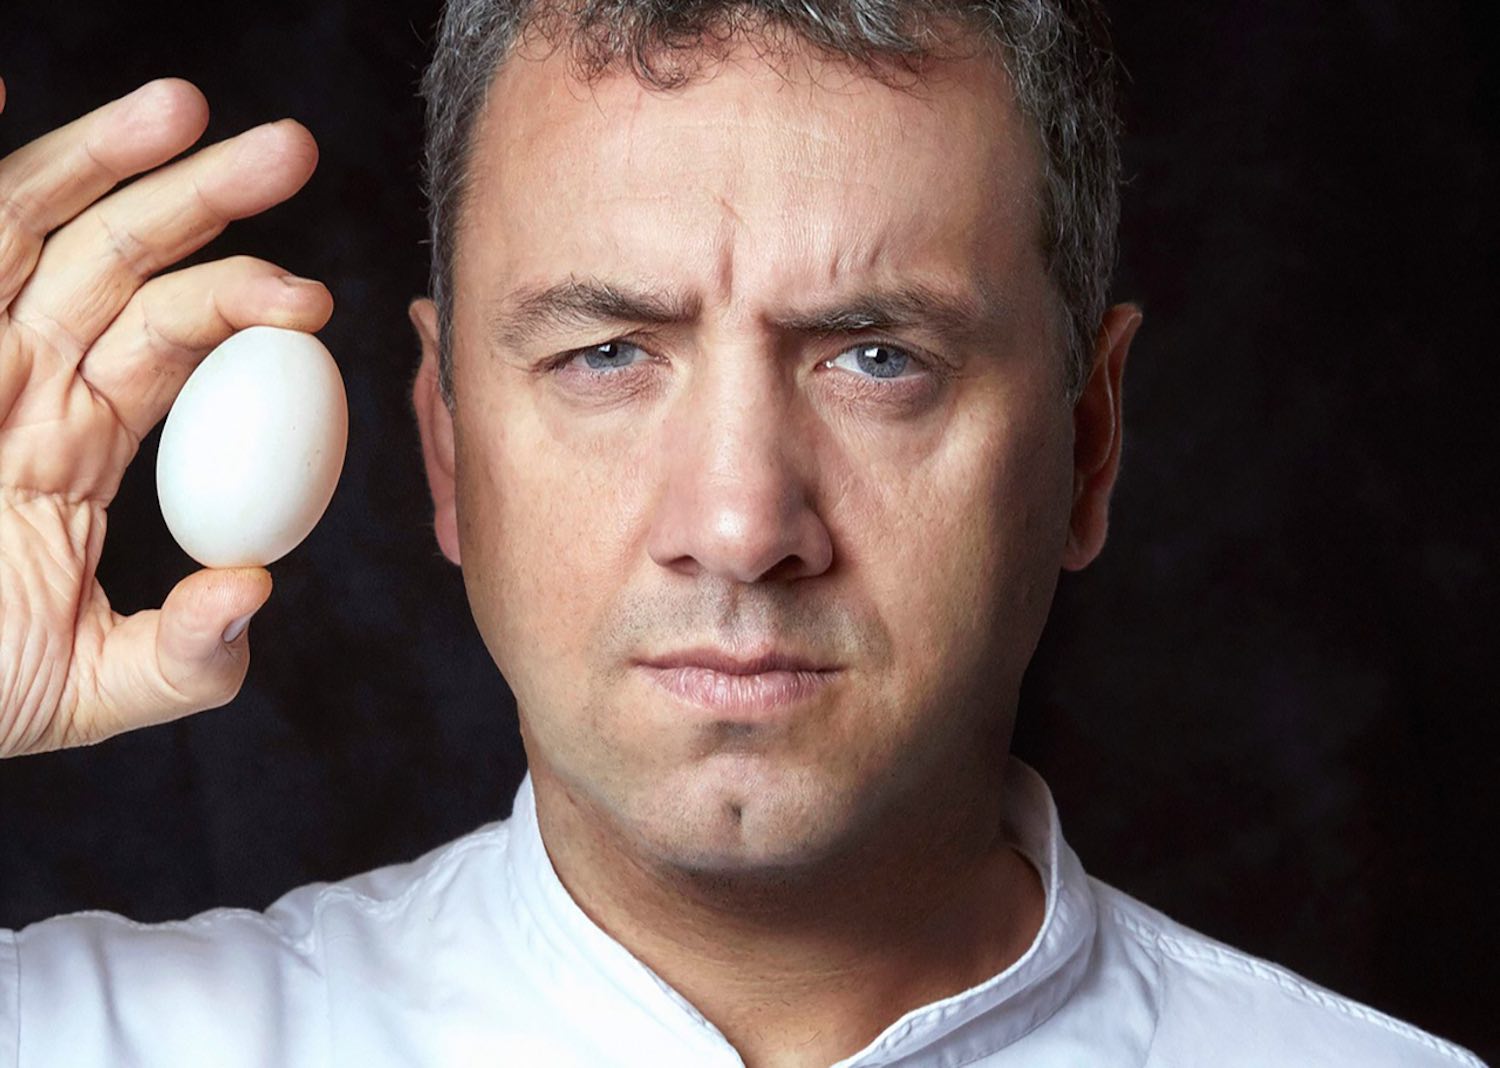 Intervista allo chef Roberto Rossi de Il Silene, ristorante 1 stella Michelin in Maremma toscana a Pescina, nel comune di Seggiano